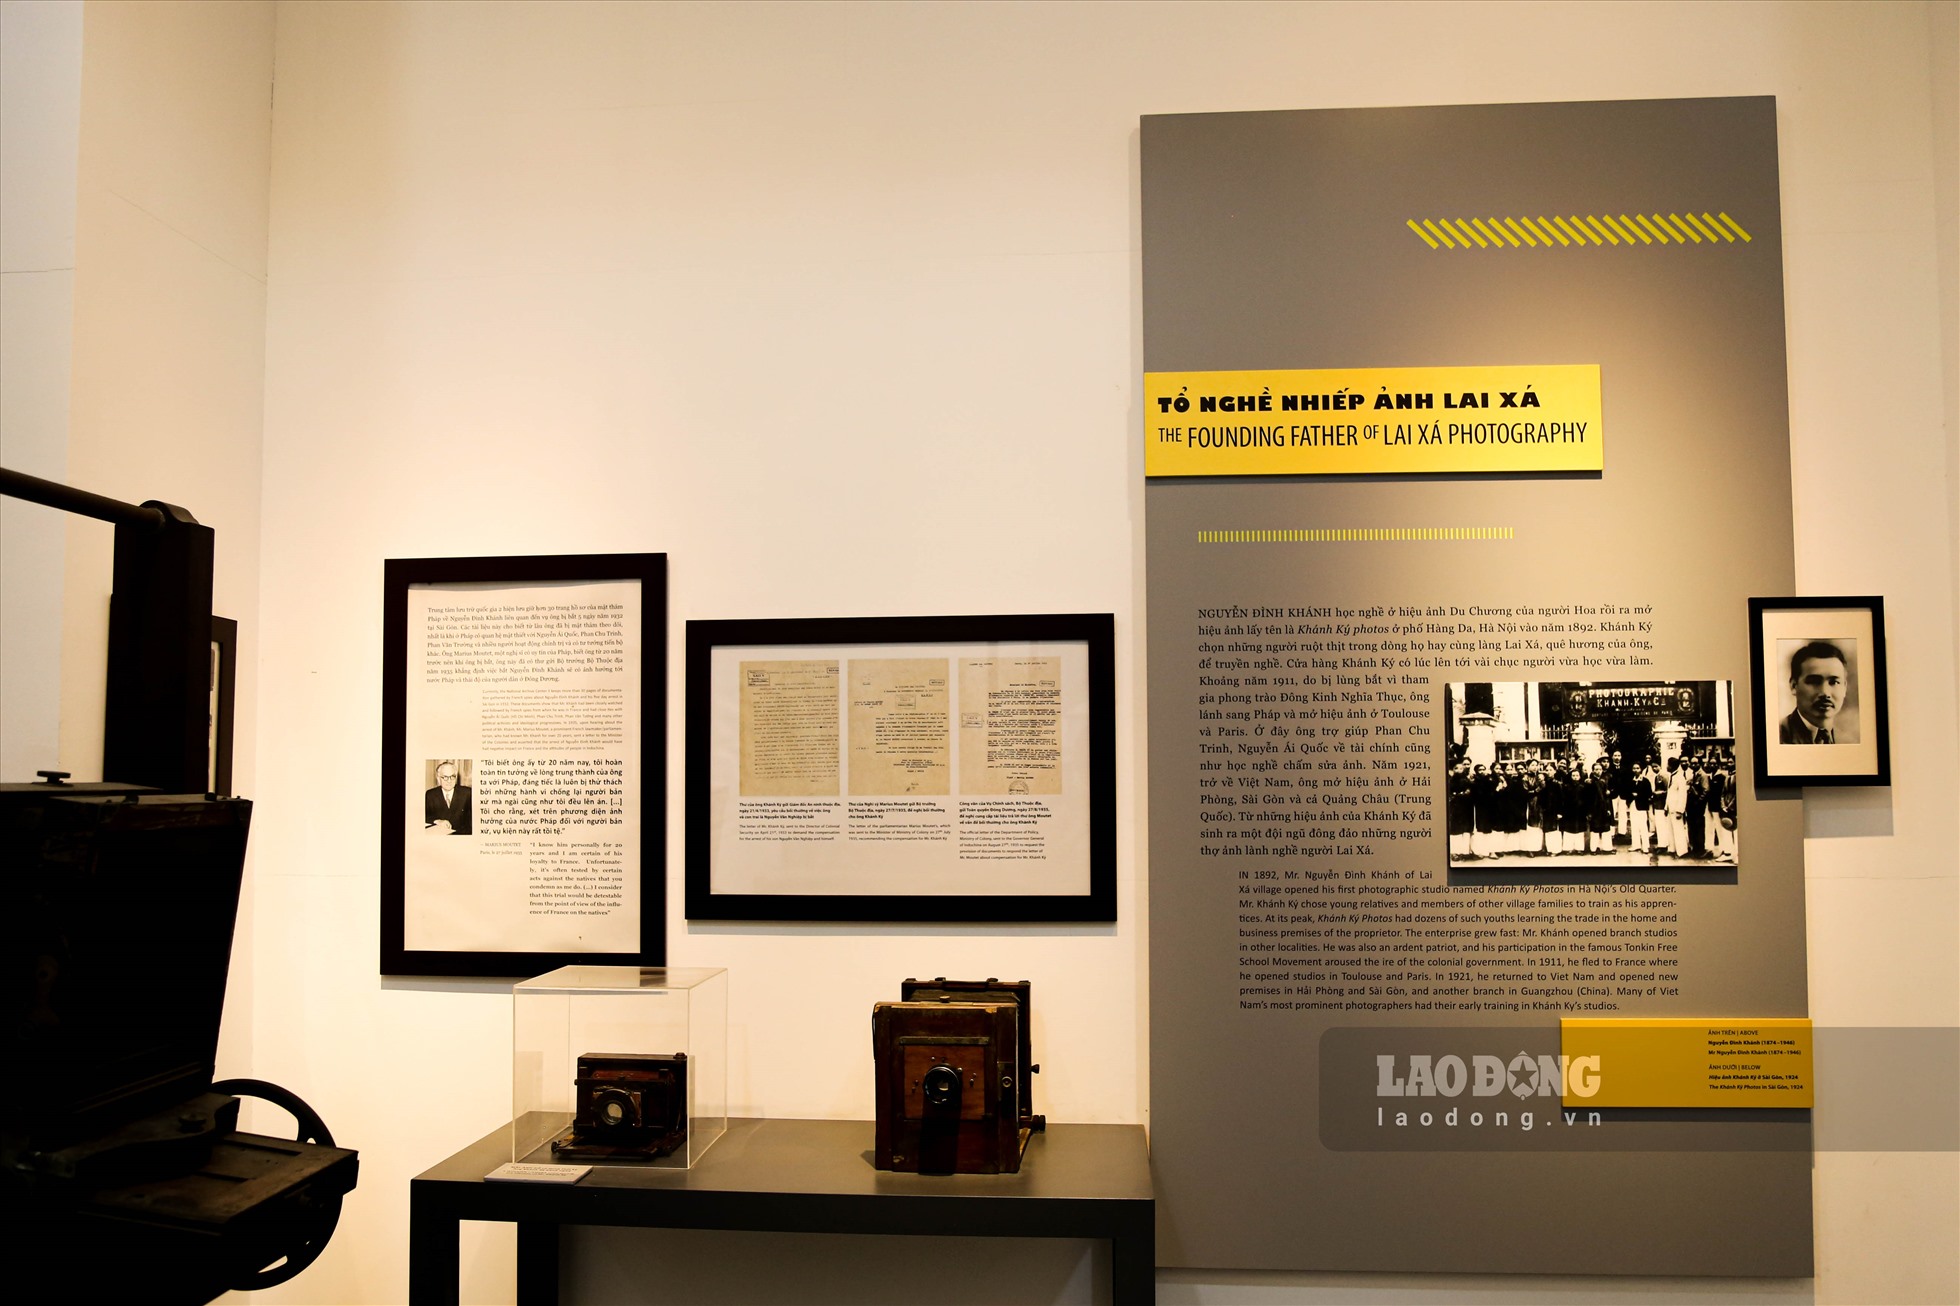 Bảo tàng Nhiếp ảnh Lai Xá là bảo tàng đầu tiên do cộng đồng đầu tư xây dựng để trưng bày, giới thiệu về truyền thống của một làng nghề nhiếp ảnh. Đúng vào dịp kỷ niệm 125 năm làng nghề Nhiếp ảnh Lai Xá (1892 - 2017), Bảo tàng Nhiếp ảnh Lai Xá được thành lập.